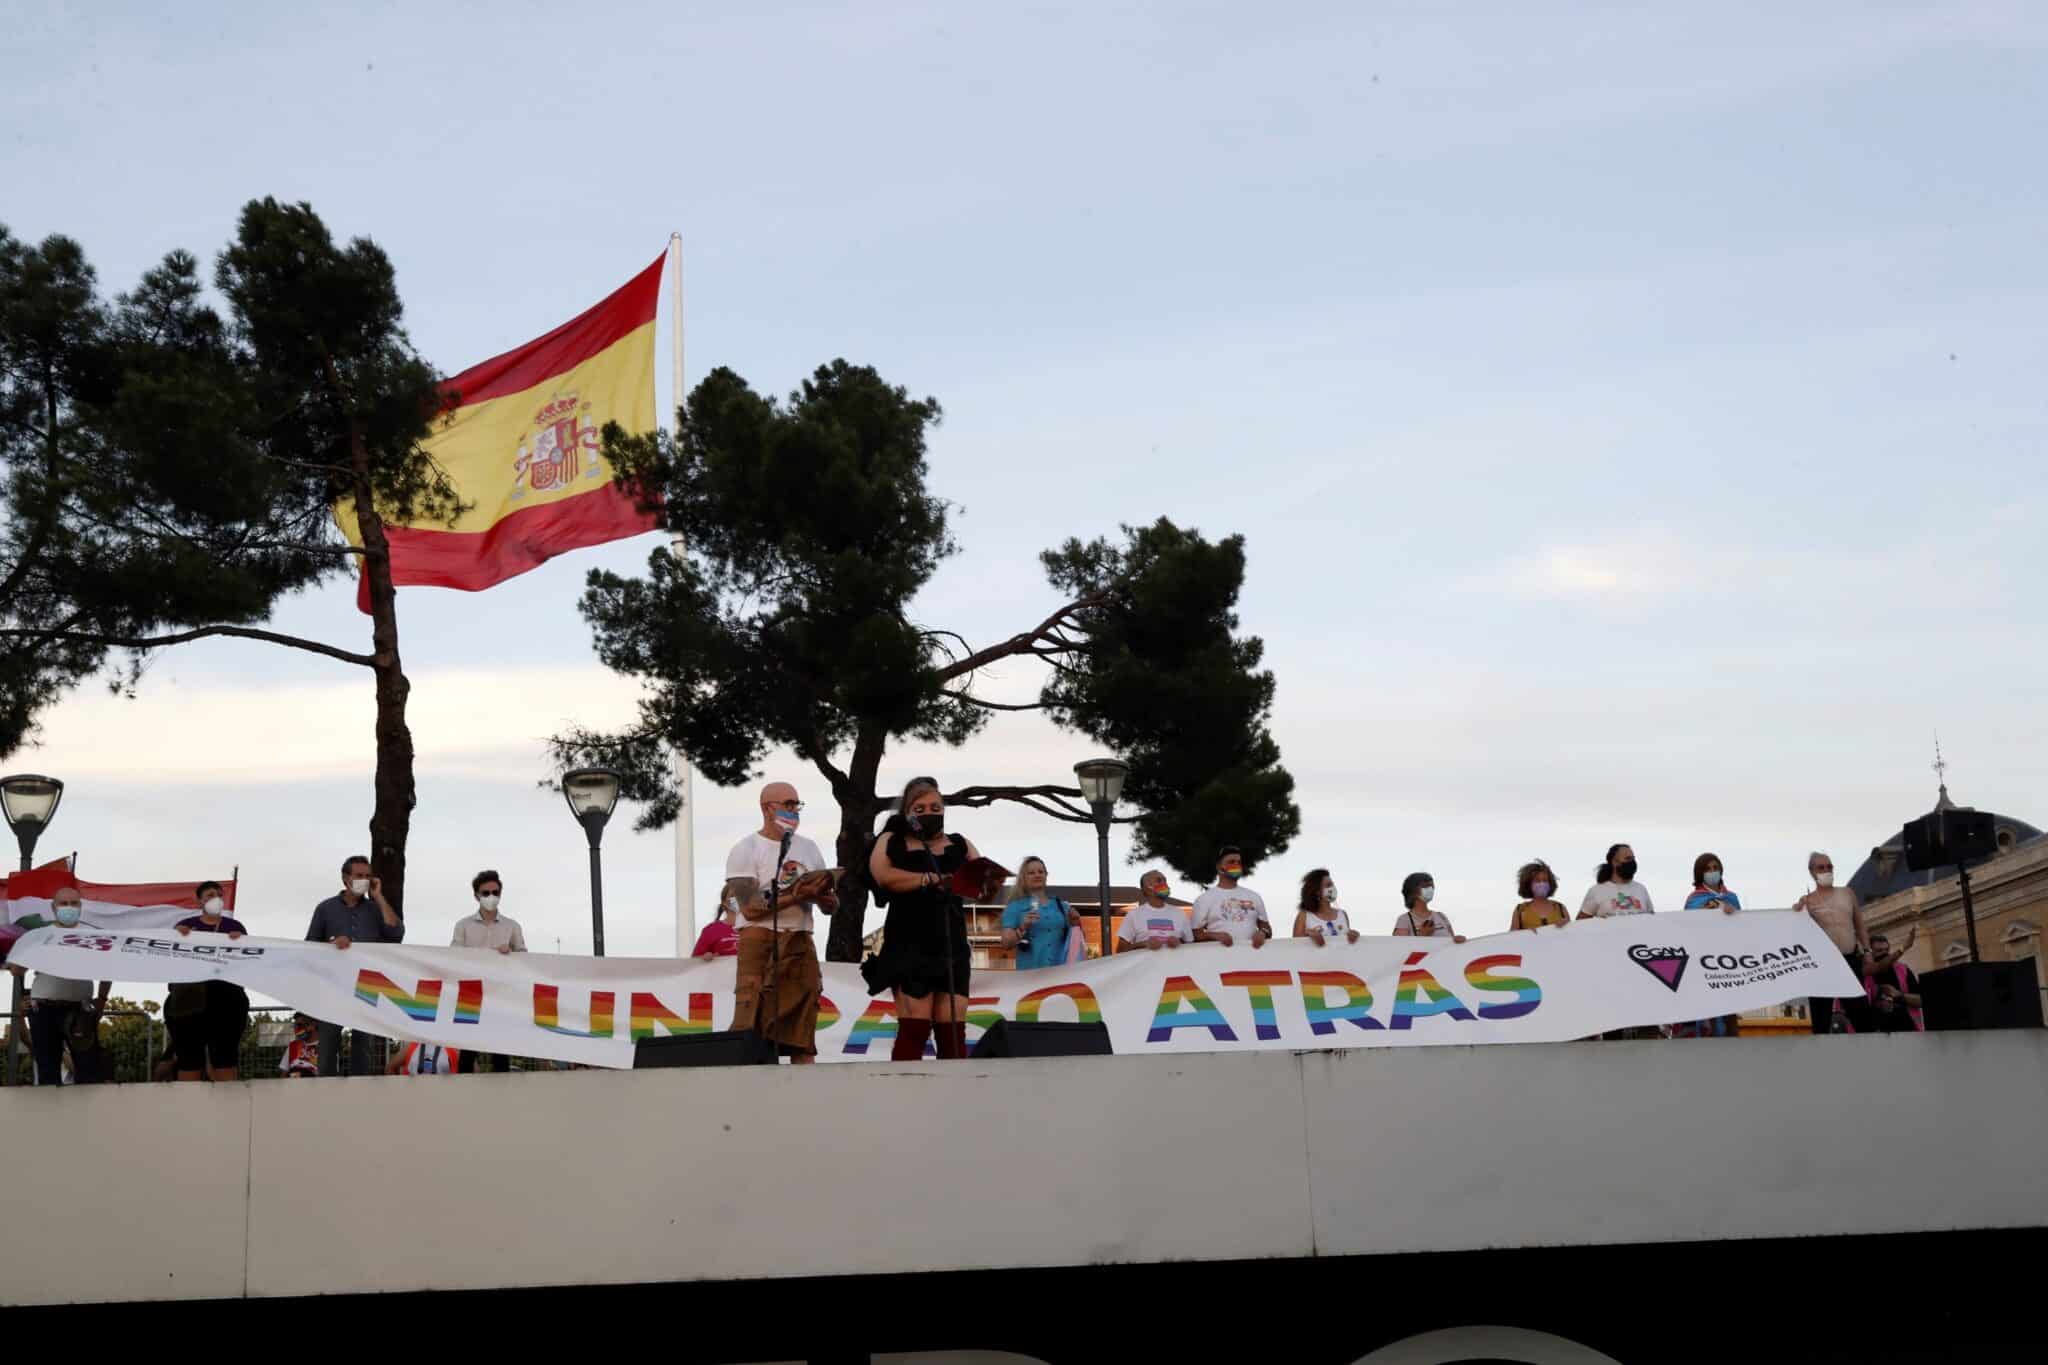 Final de la marcha del Orgullo LGTBI que ha recorrido hoy sábado el paseo del Prado y Recoletos de Madrid, finalizando en la Plaza de Colón.